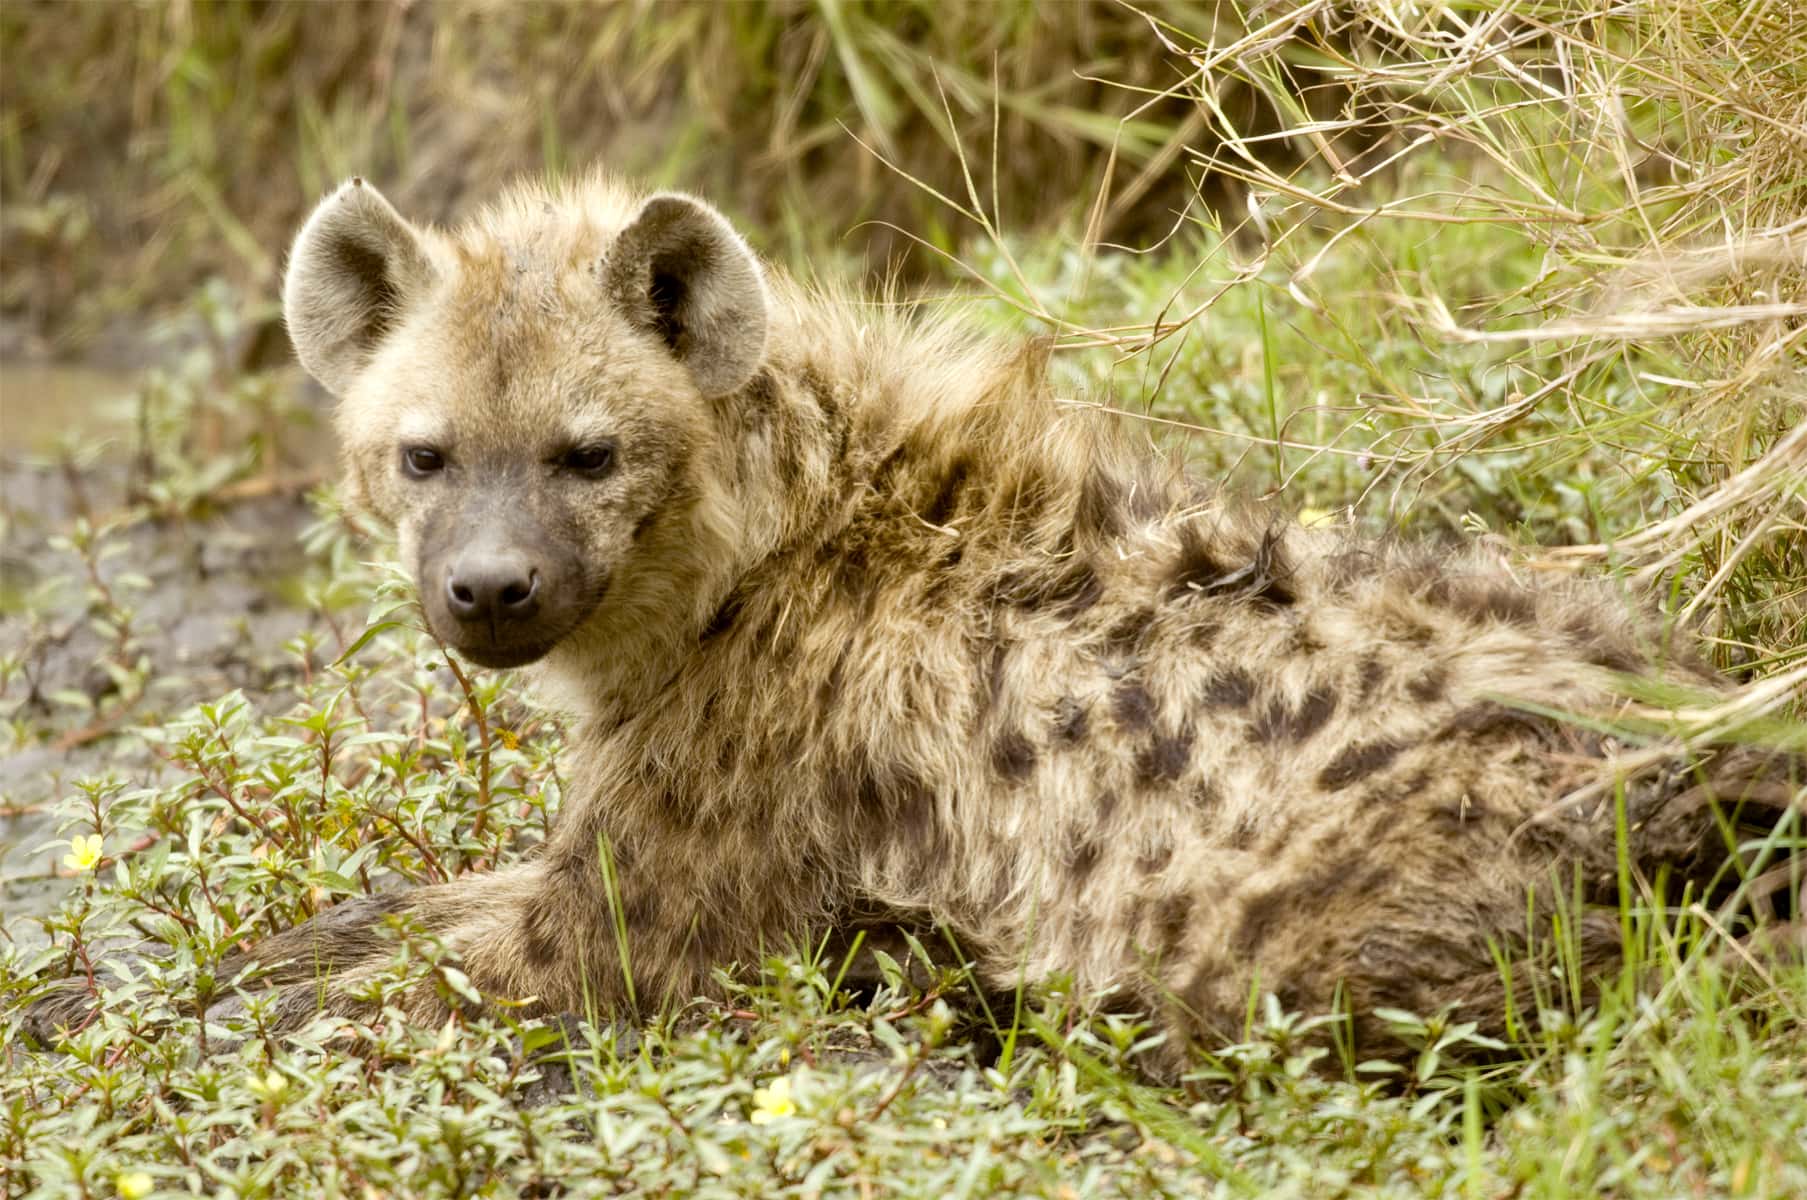 hyena masai mara kenya 2021 08 26 18 00 22 utc